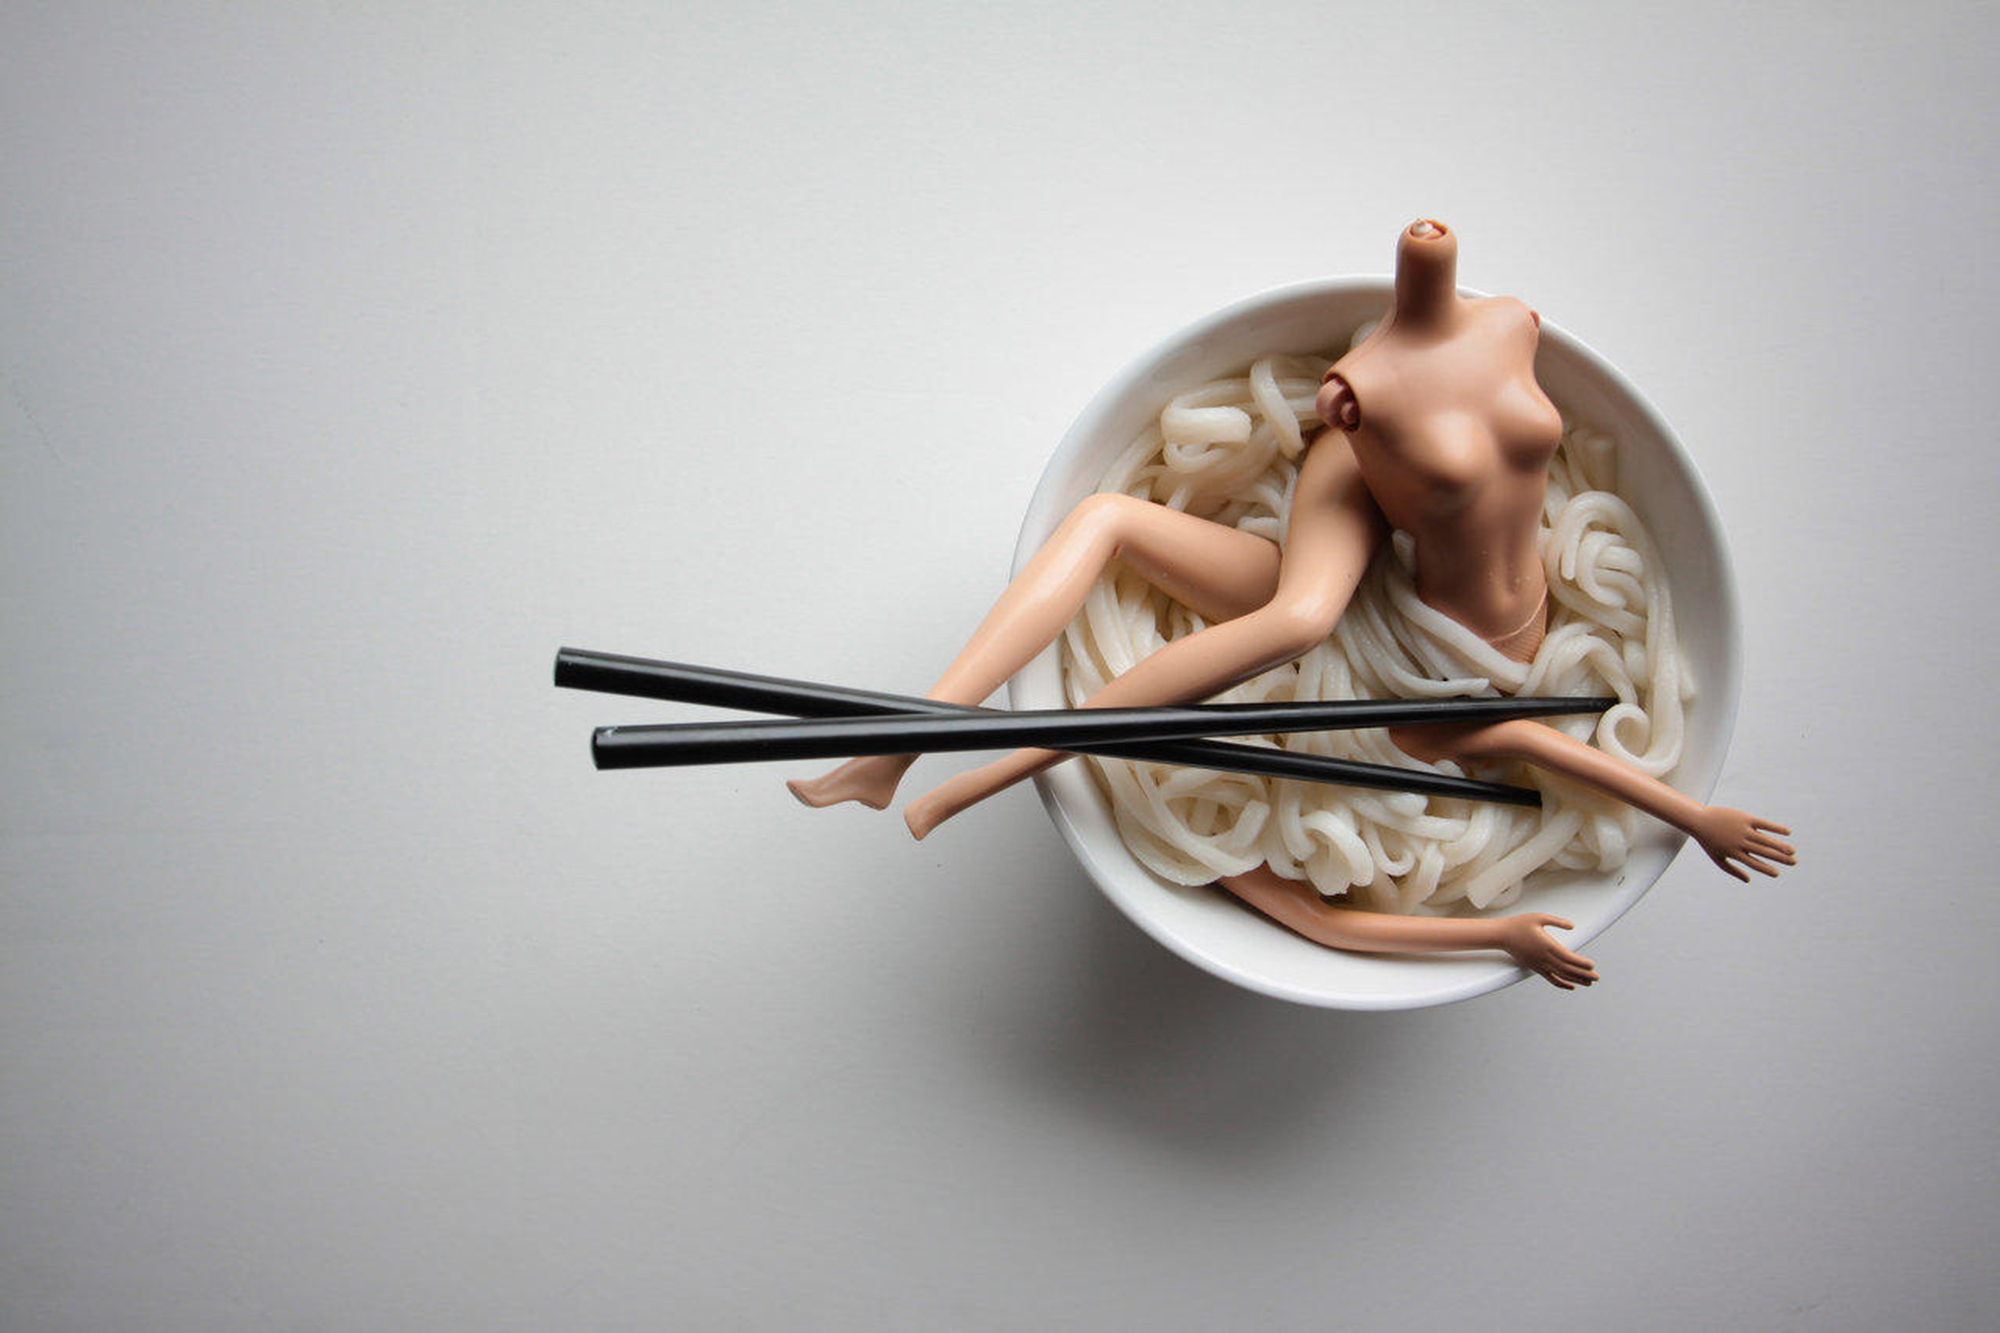 Mariel Clayton, Consumption - broken doll body in noodles